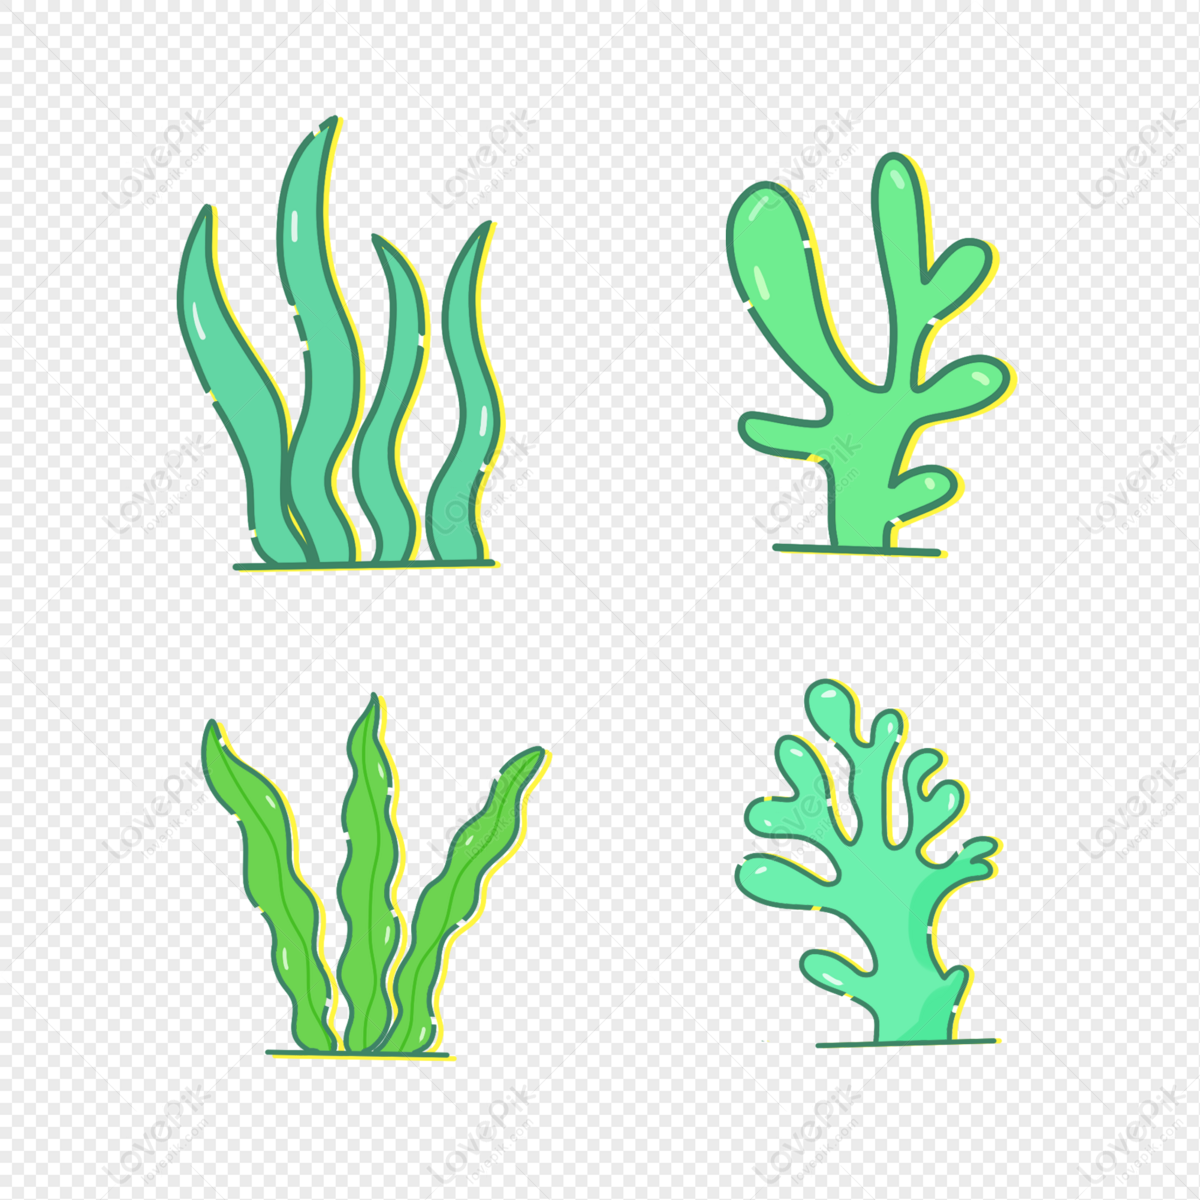 Với sắc xanh đặc trưng của tảo biển, Seaweed Green mang lại vẻ đẹp mộc mạc nhưng đầy cuốn hút cho bức ảnh. Hãy cùng chiêm ngưỡng hình ảnh nổi bật với gam màu này để tận hưởng giây phút thư giãn tuyệt vời.